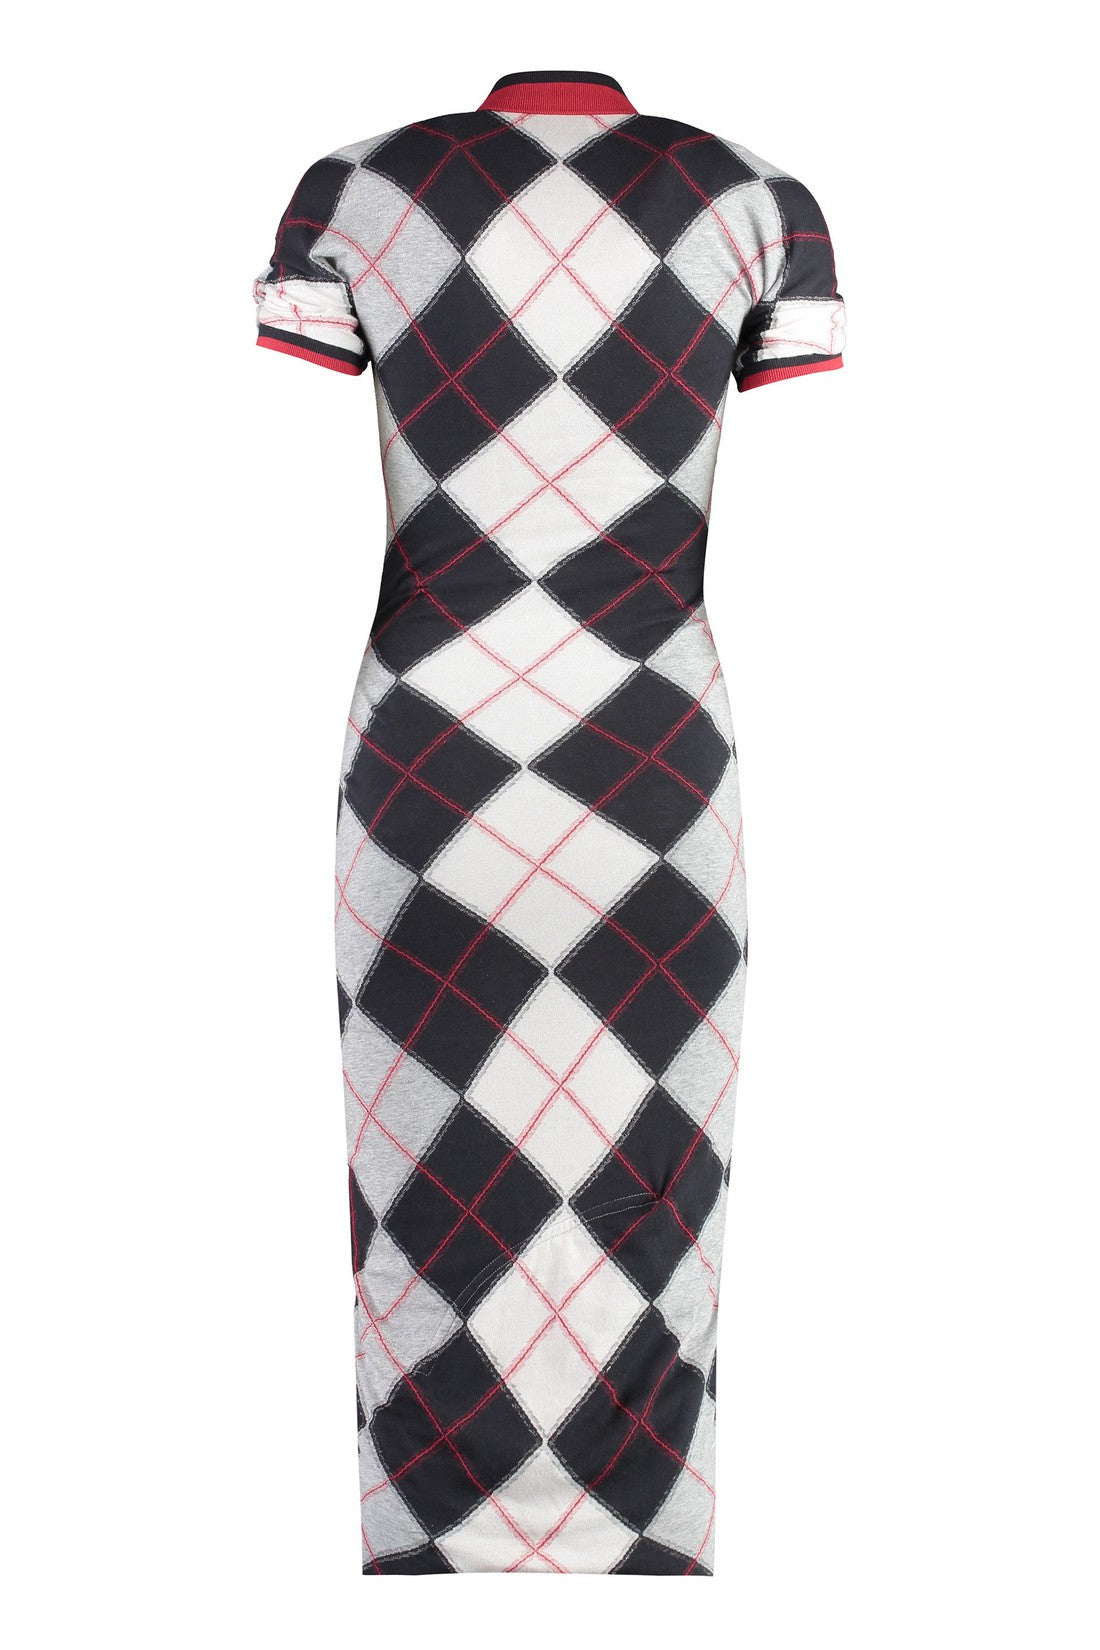 Vivienne Westwood-OUTLET-SALE-Argyle cotton blend dress-ARCHIVIST